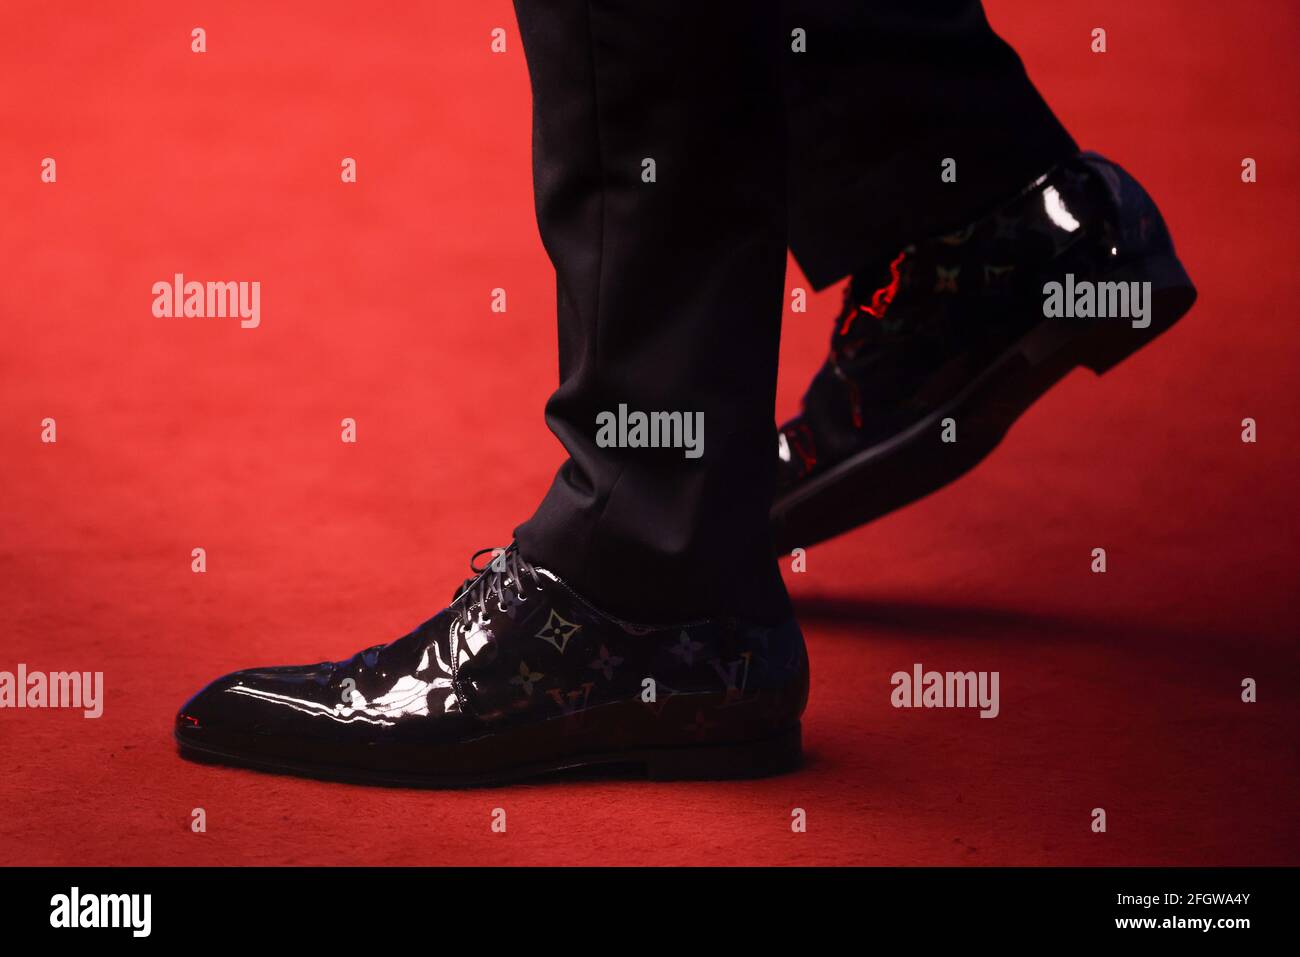 Ein detaillierter Blick auf die Schuhe von Judd Trump von England während  des 10. Tages der Betfred Snookerweltmeisterschaft 2021 im Crucible,  Sheffield. Bilddatum: Montag, 26. April 2021 Stockfotografie - Alamy